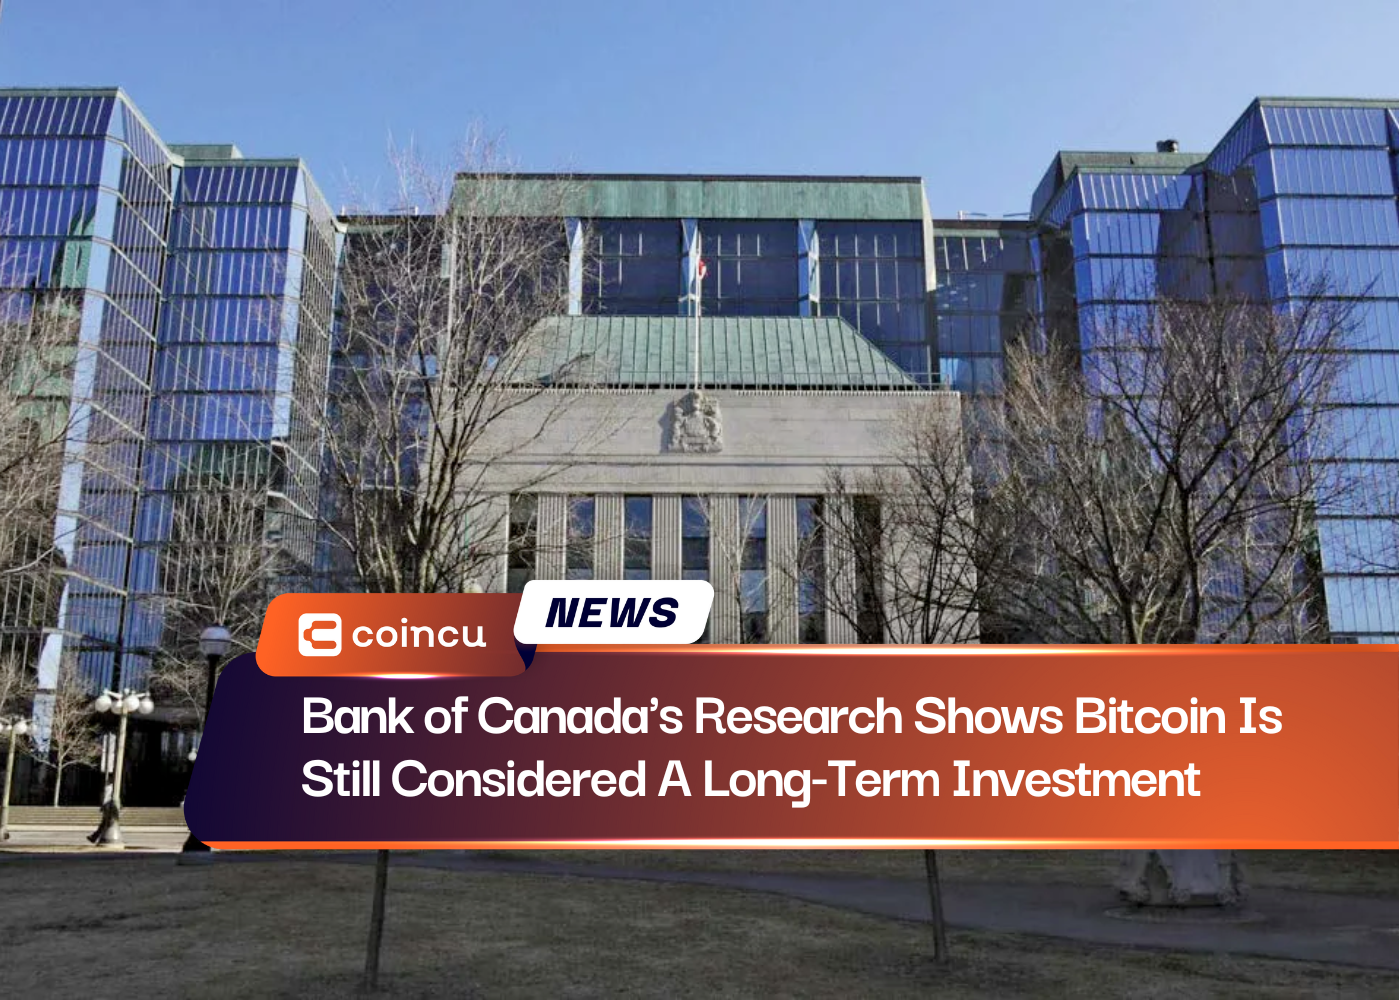 Nghiên cứu của Ngân hàng Canada cho thấy Bitcoin vẫn được coi là khoản đầu tư dài hạn